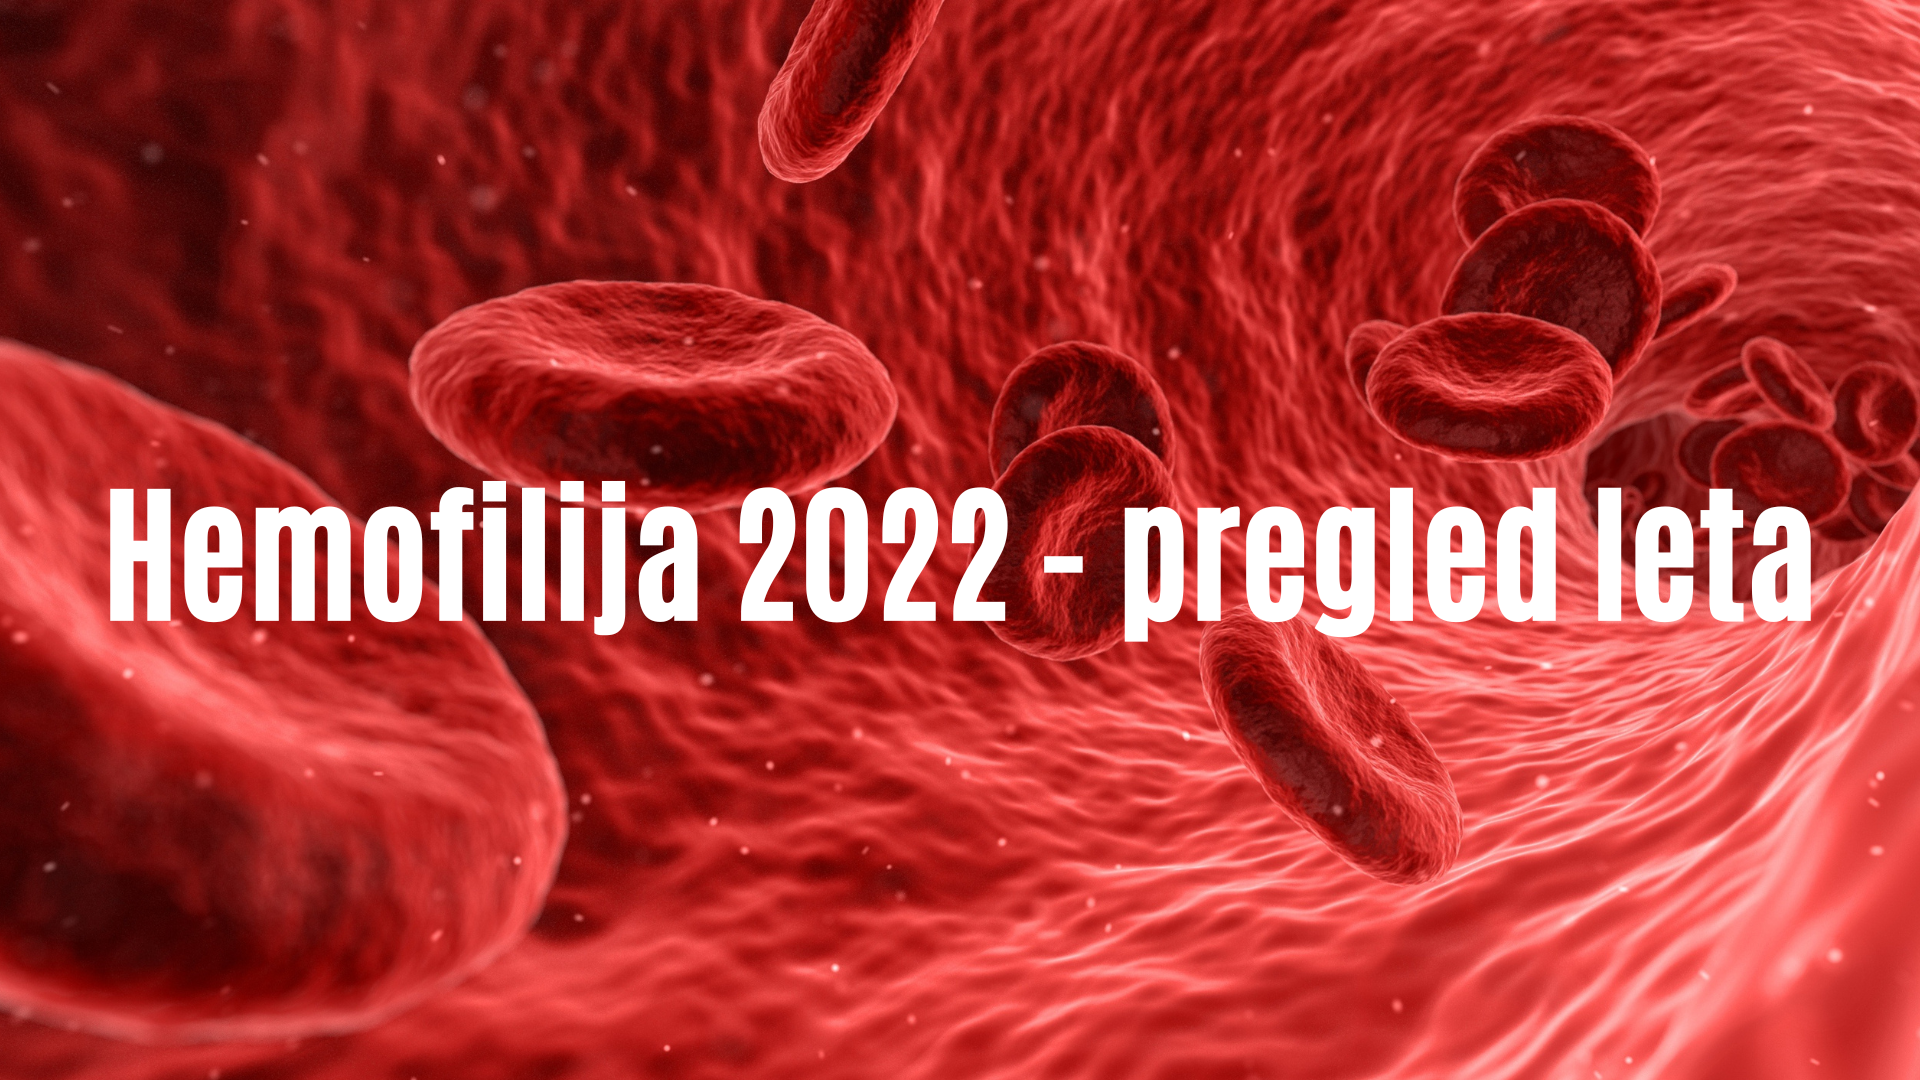 Hemofilija 2022 - pregled letapng